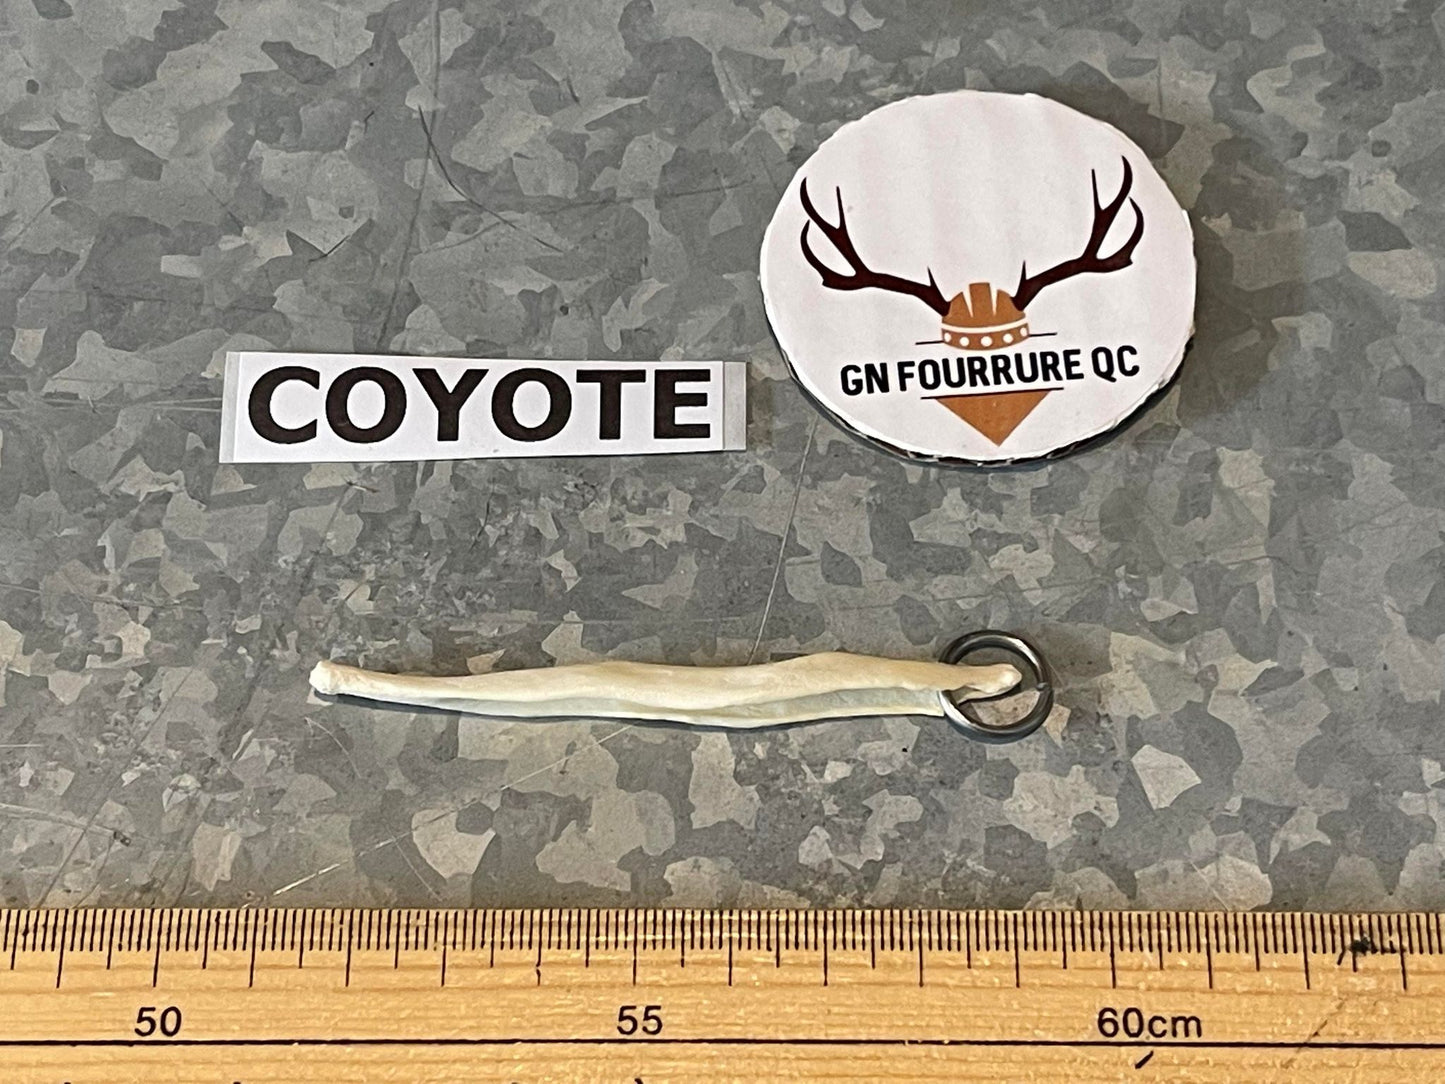 Coyote Baculum (Penile Bone)